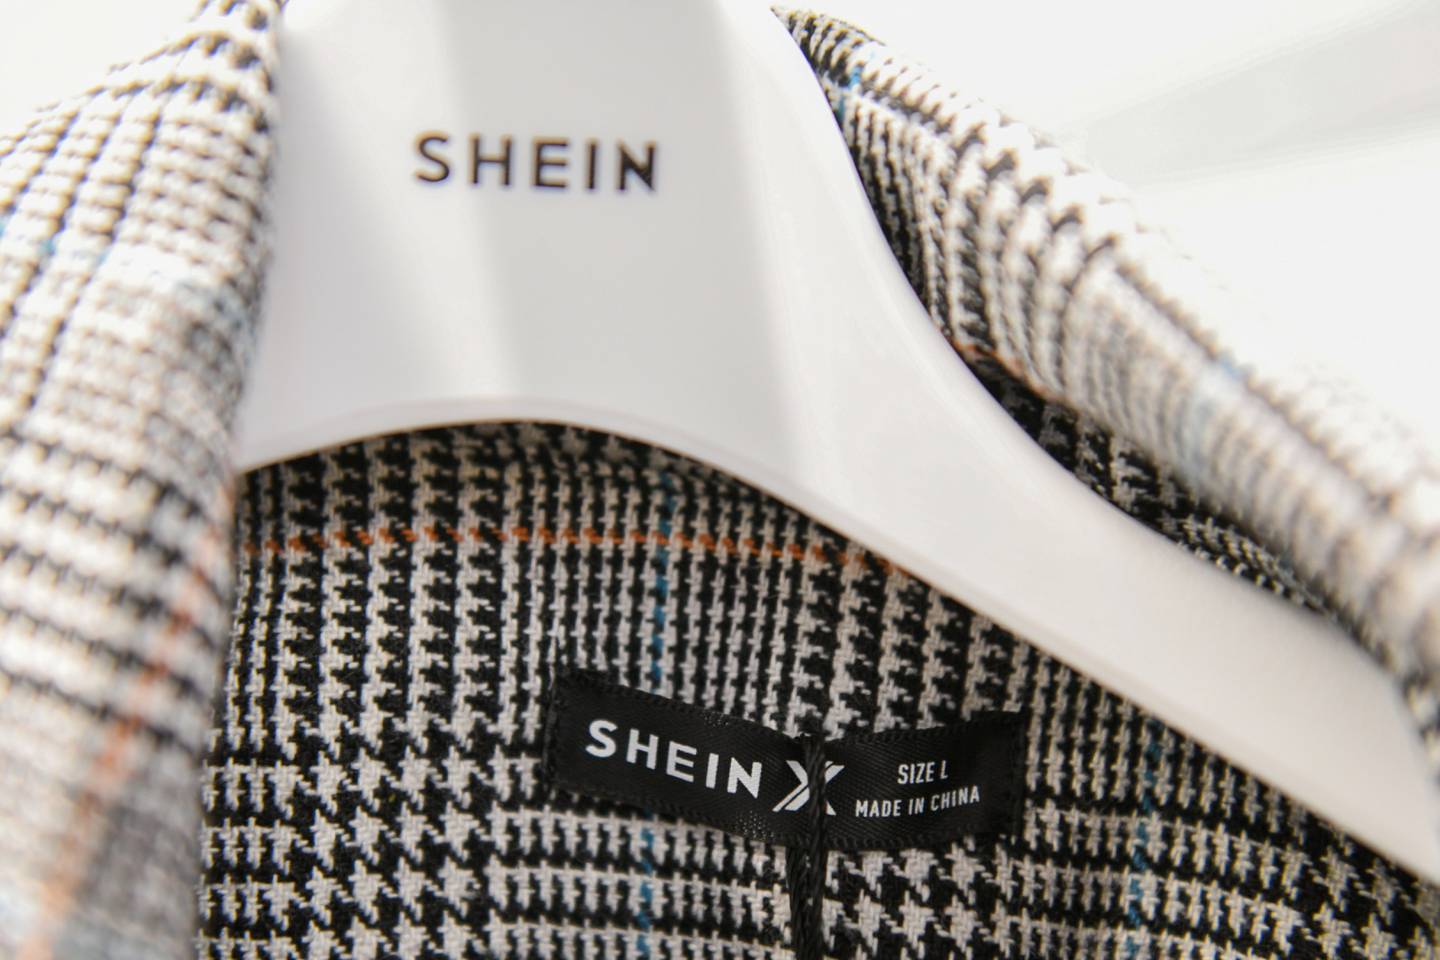 El exdirector de operaciones de SoftBank oficialmente toma las riendas de la empresa de moda Shein y considera que sus cadenas de suministro pueden impulsar a las cadenas locales.